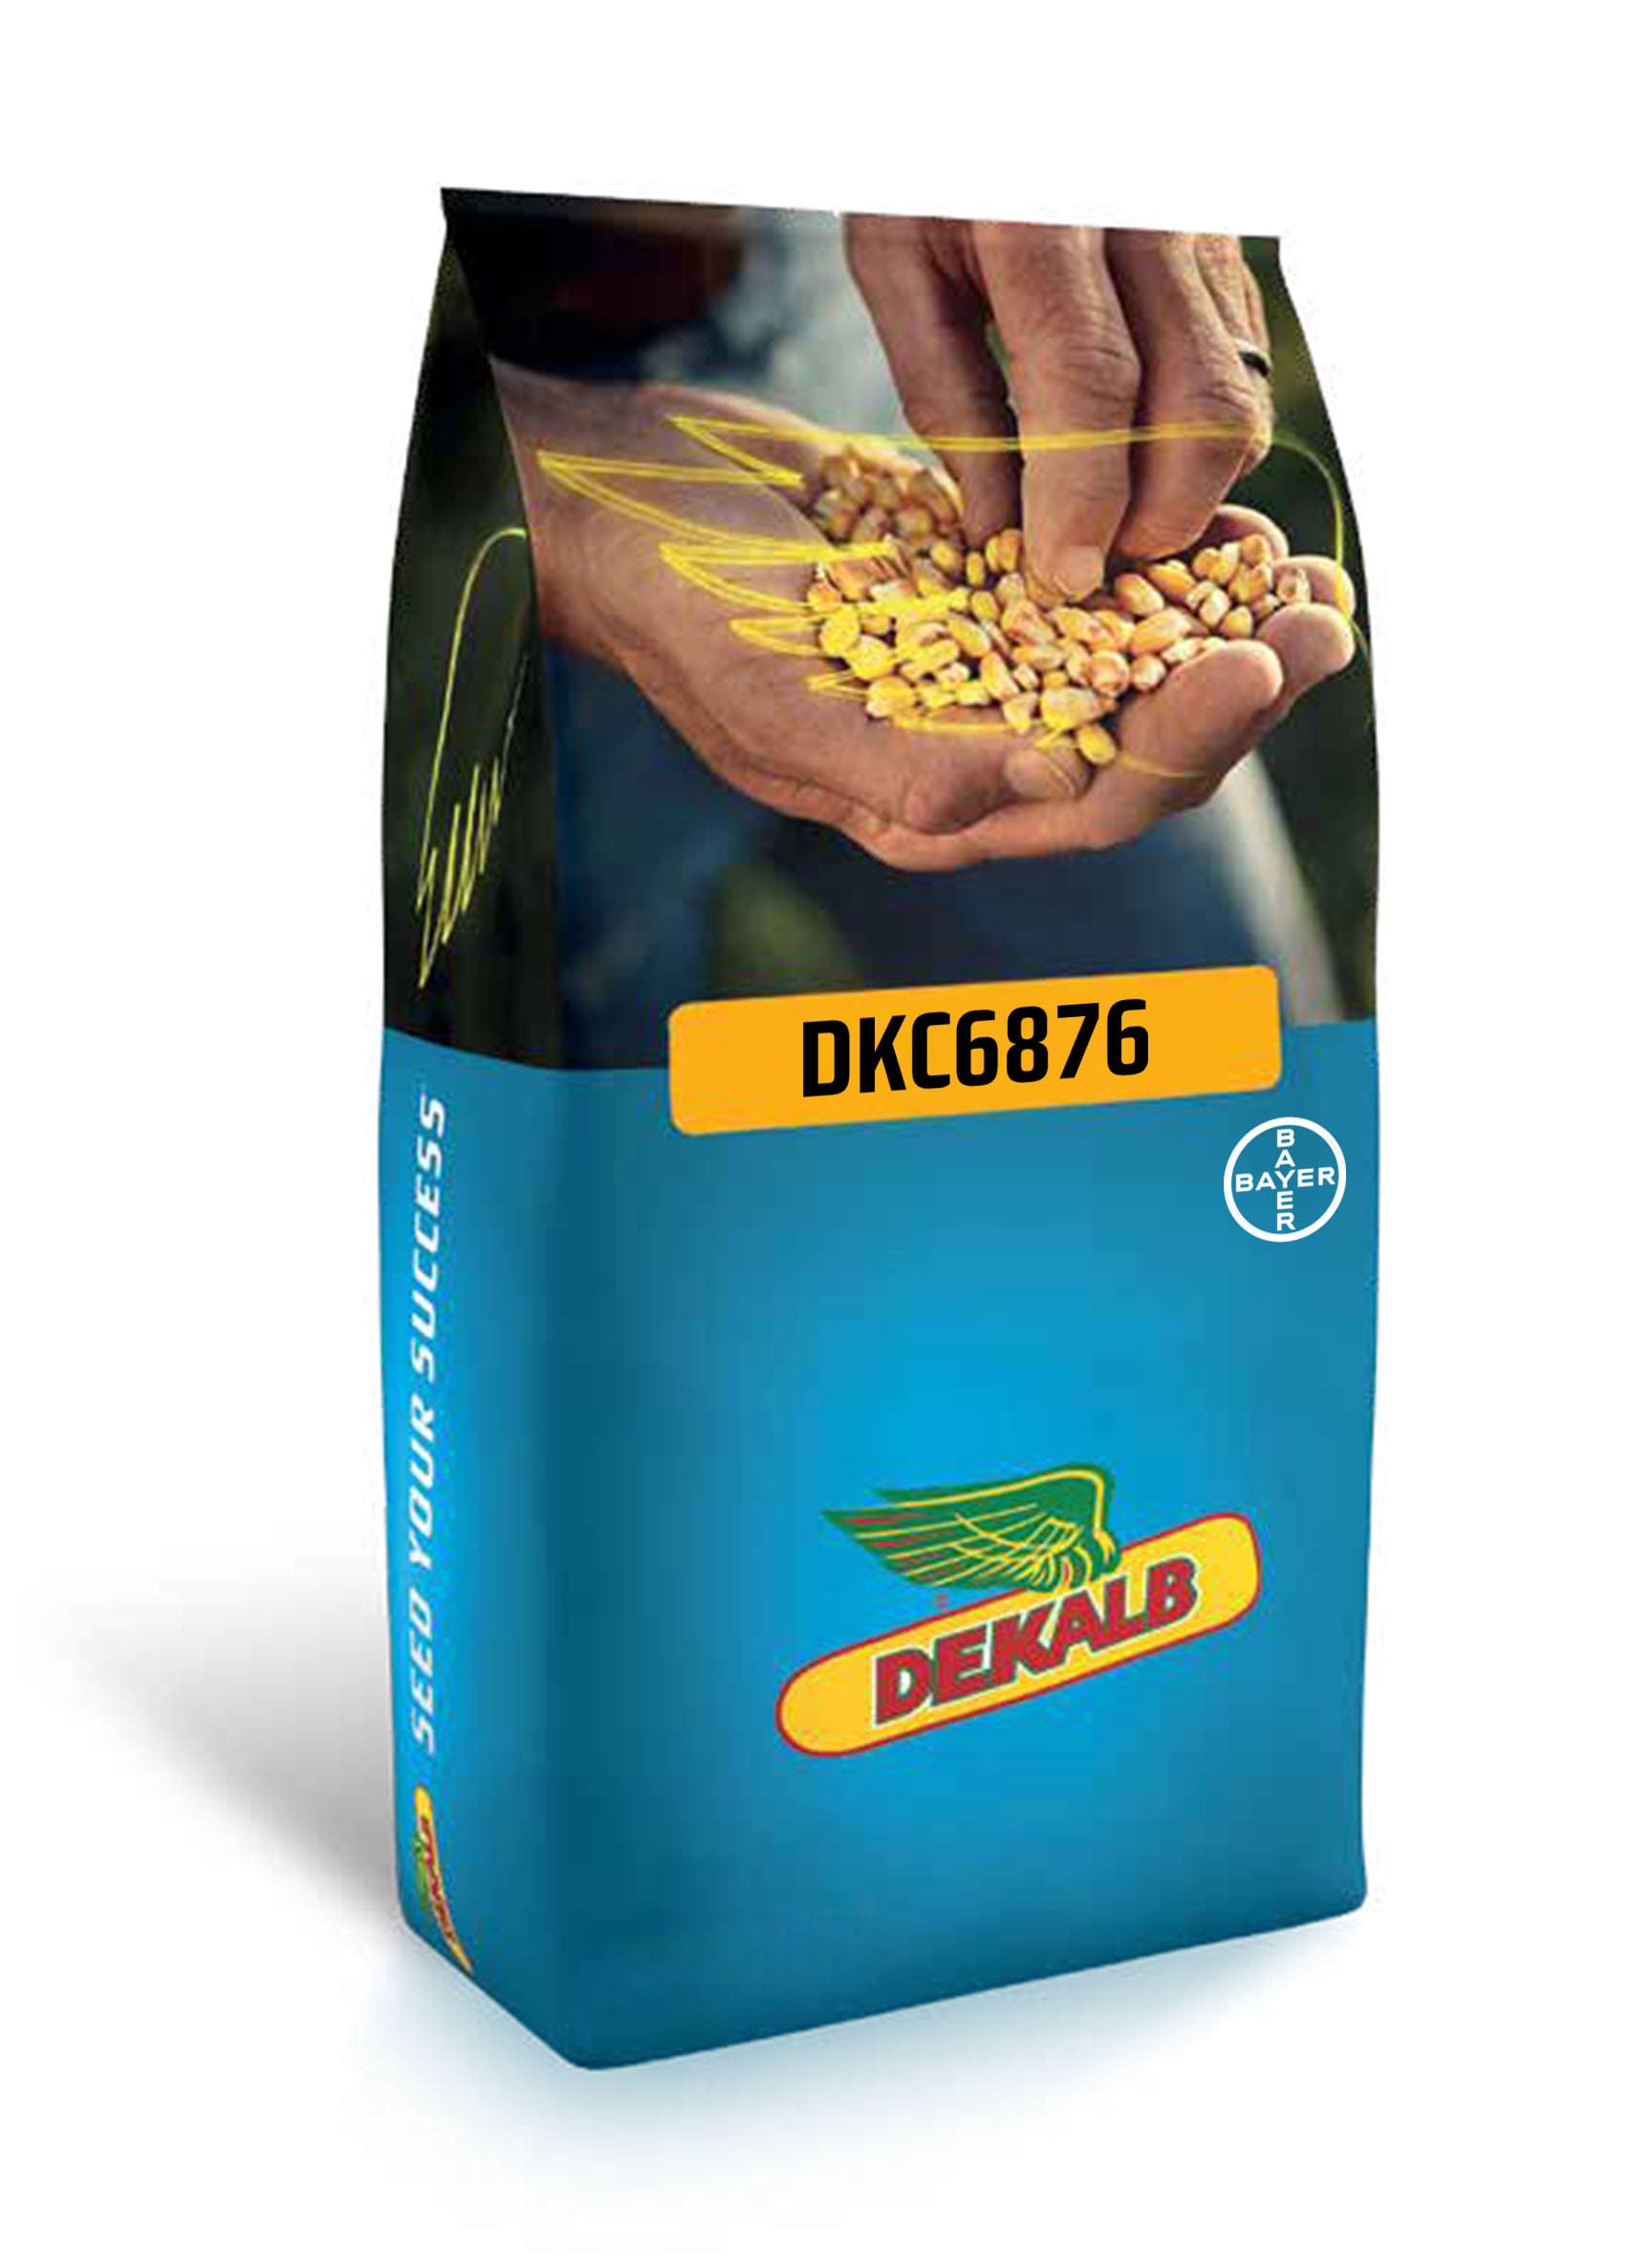 DKC6876